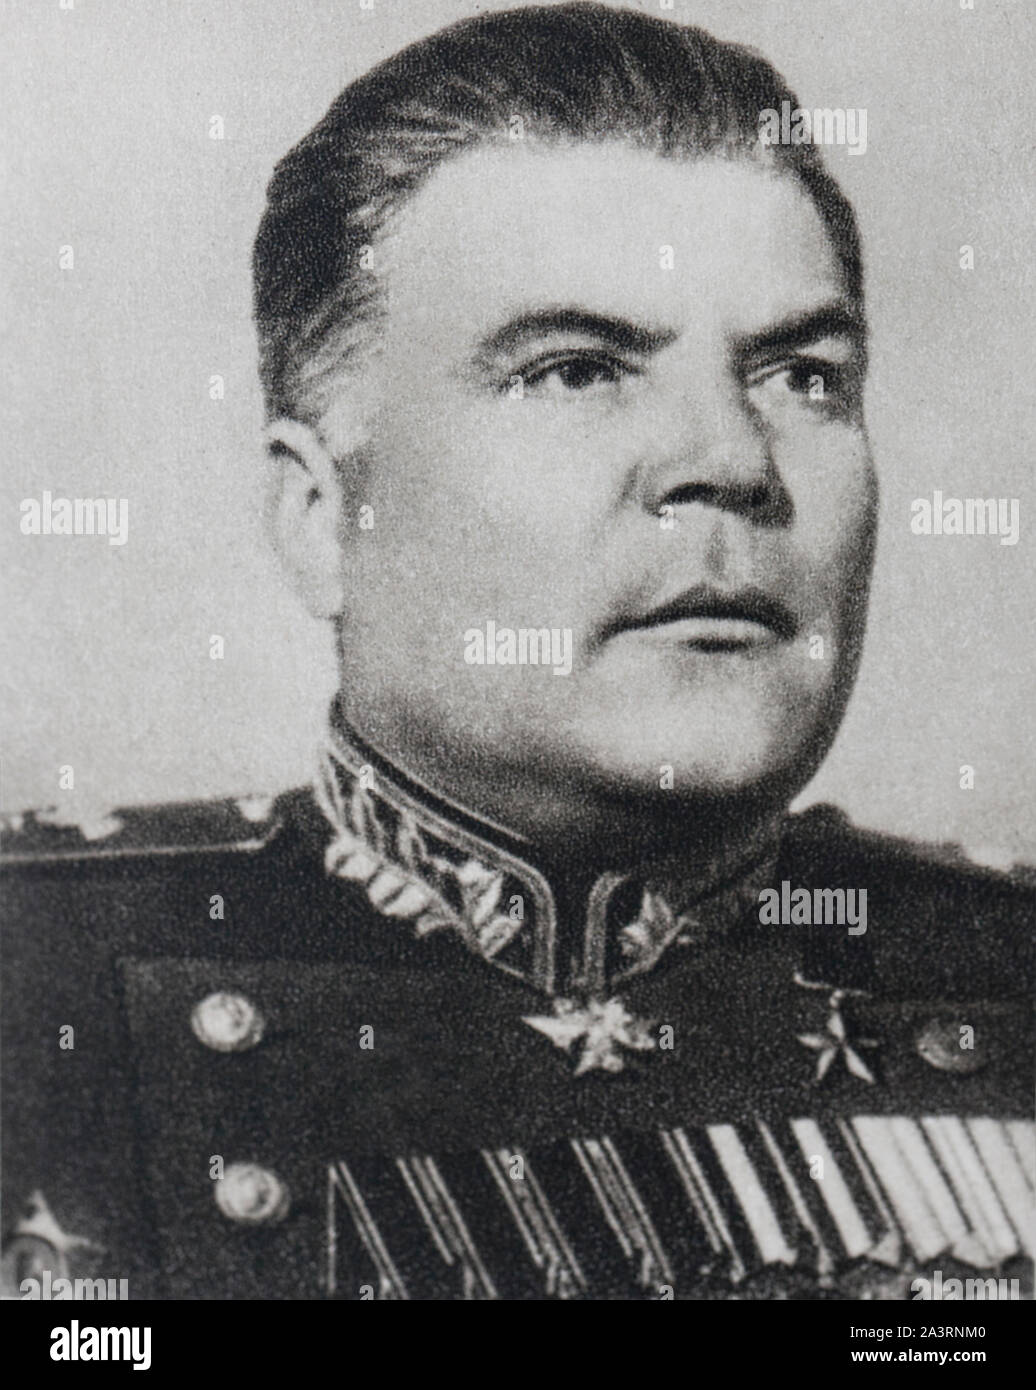 Soviet Military Fotograf As E Im Genes De Alta Resoluci N Alamy